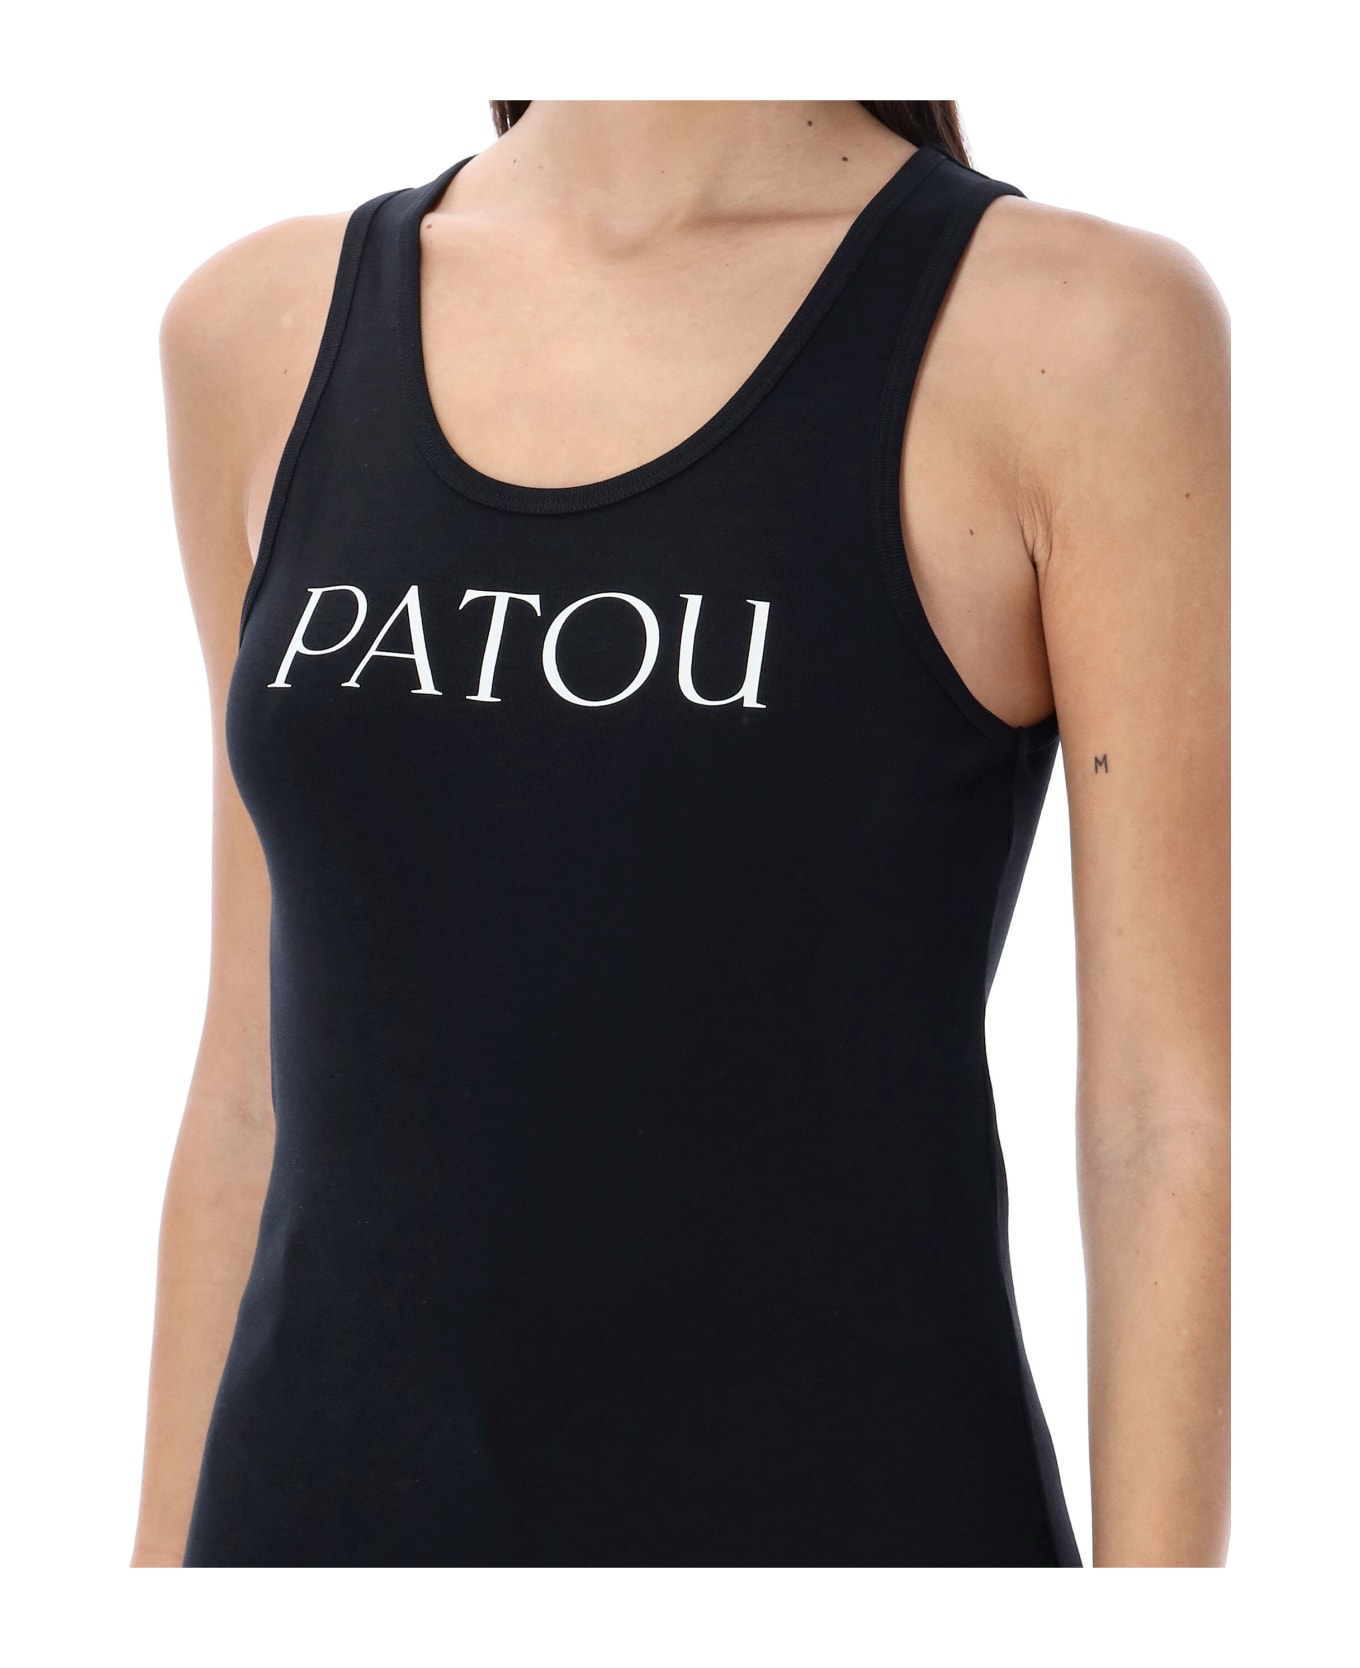 Patou Logo Tank Top - BLACK